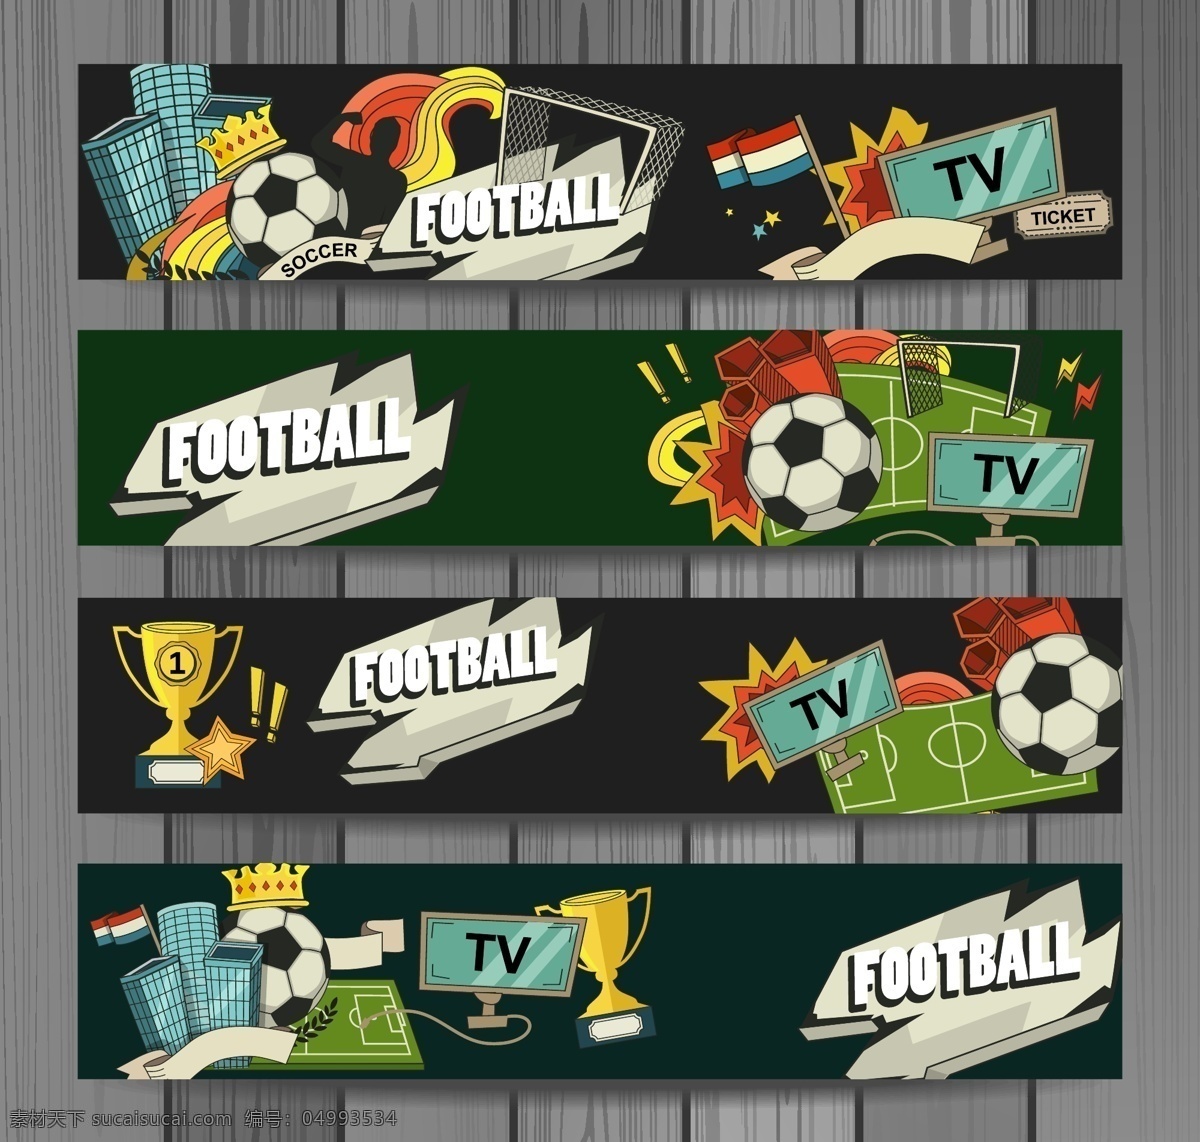 足球 魅力 海报 矢量 矢量素材 设计素材 背景素材